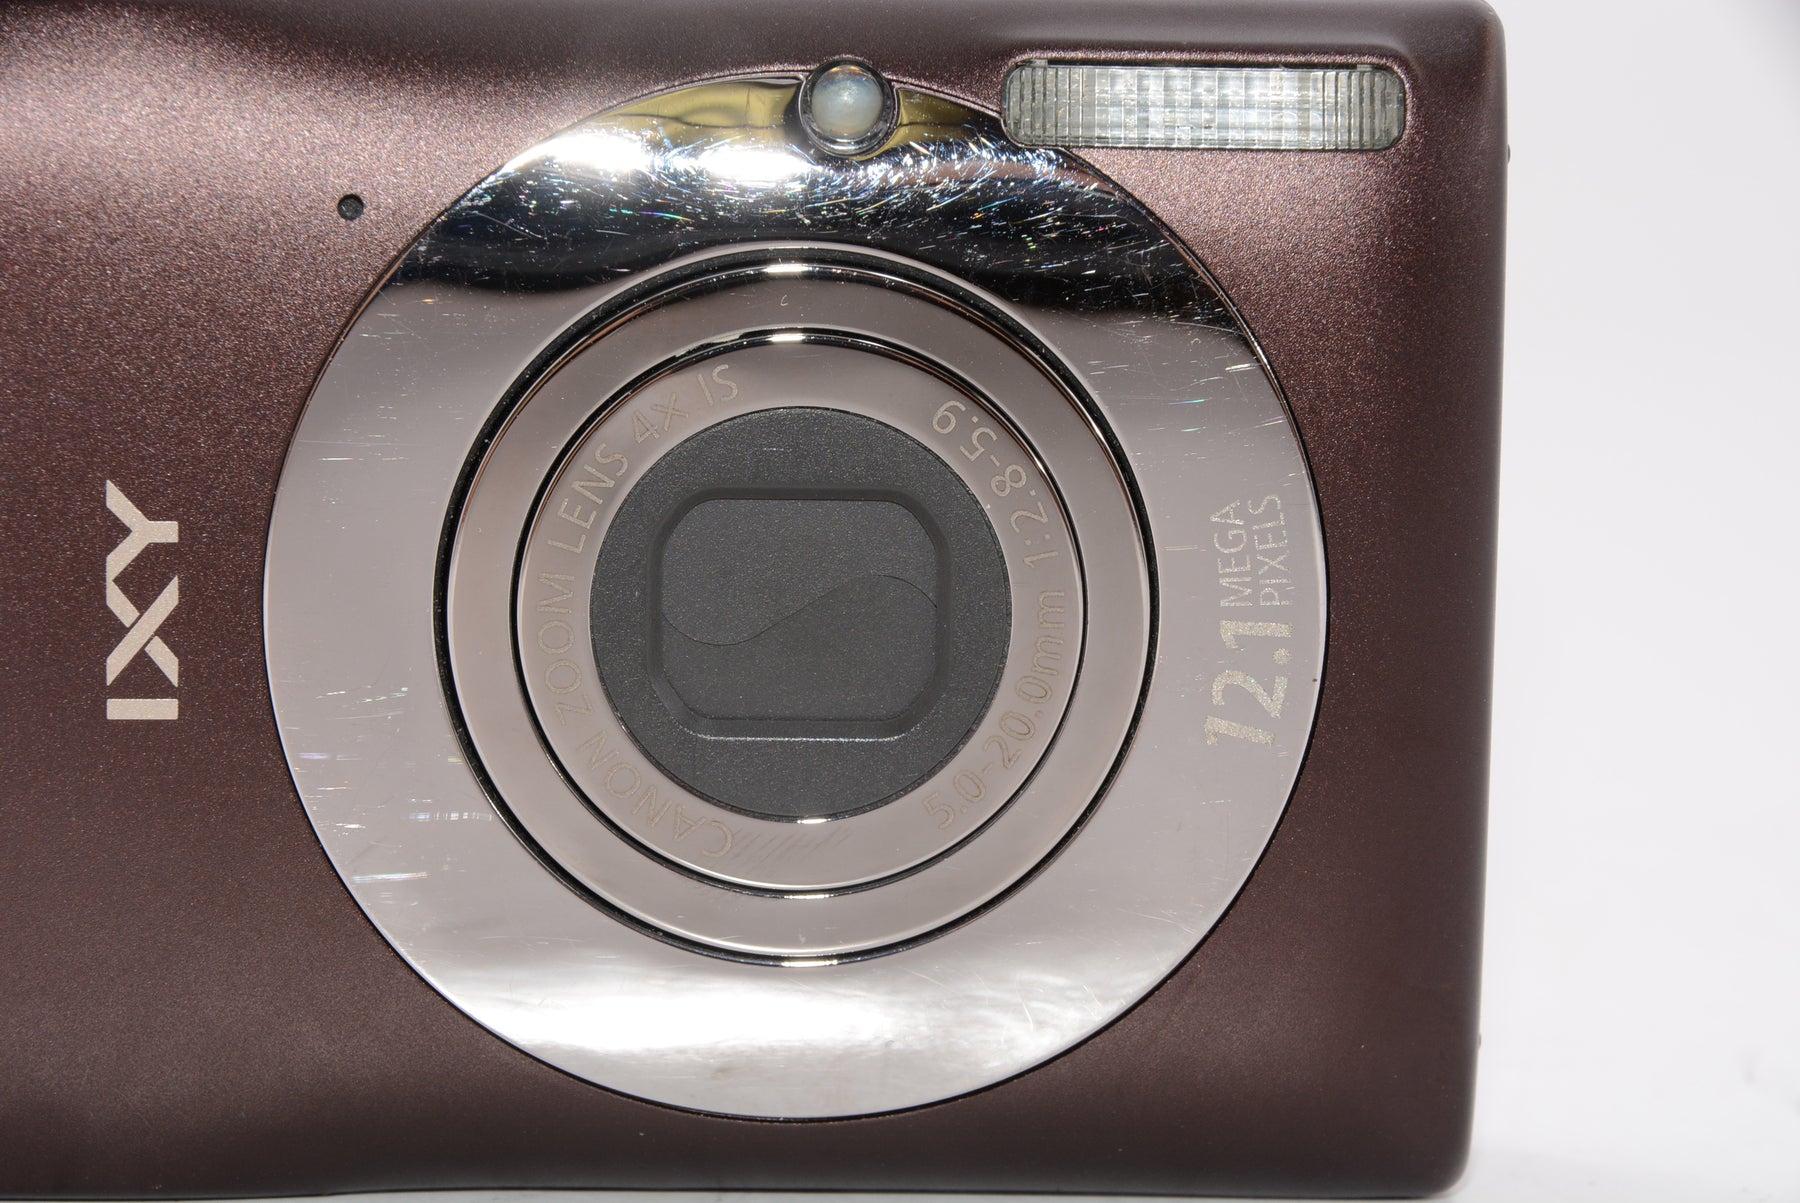 オススメ】Canon デジタルカメラ IXY 200F ブラウン IXY200F(BW)